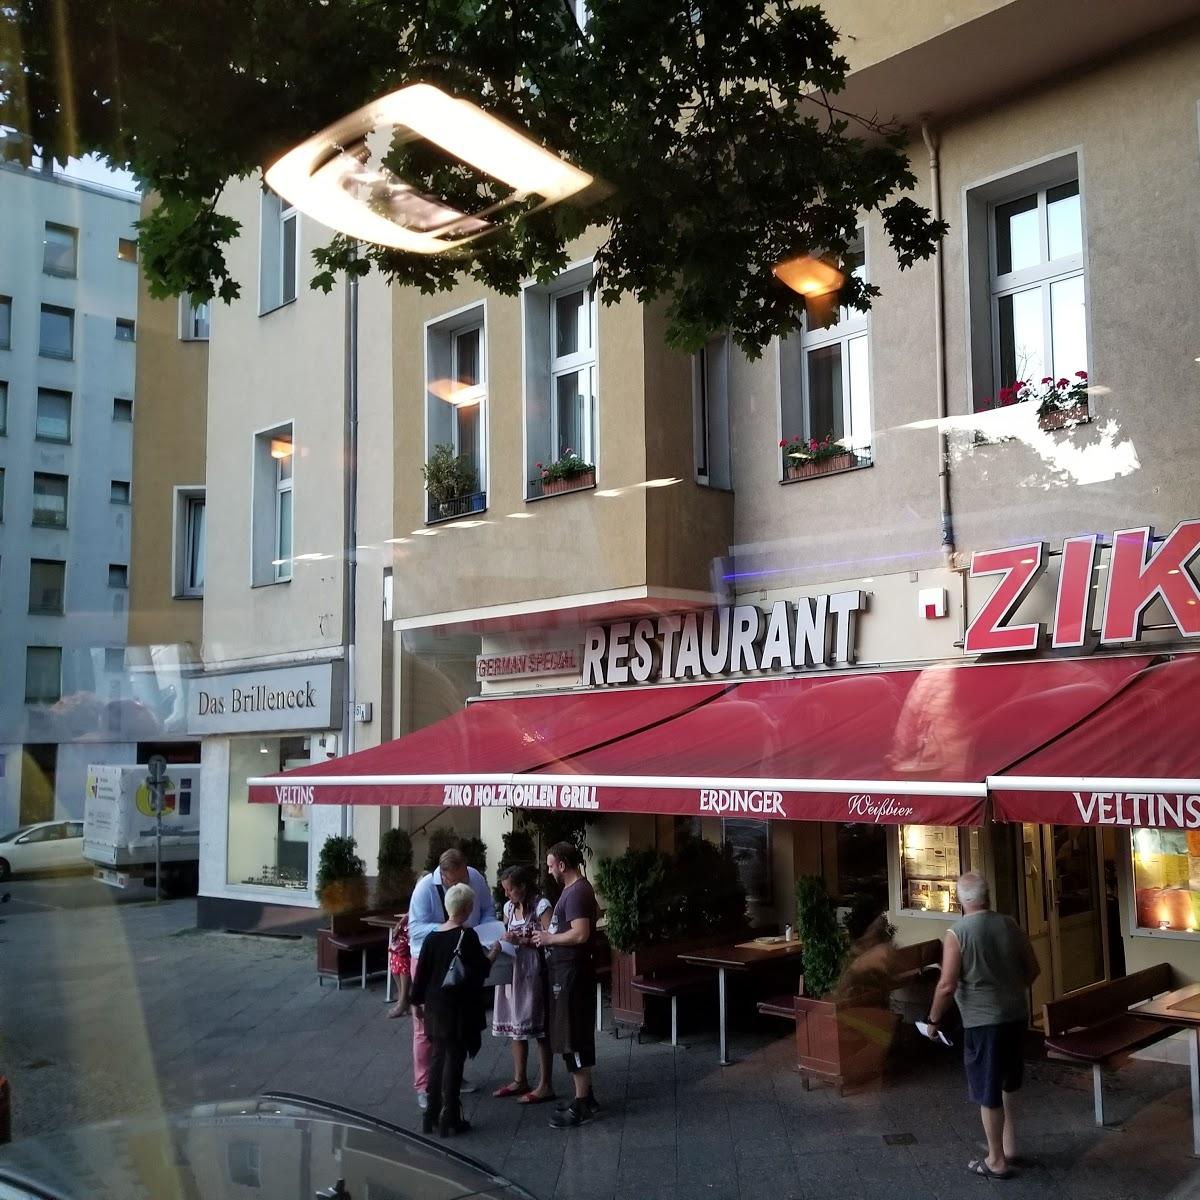 Restaurant "Ziko